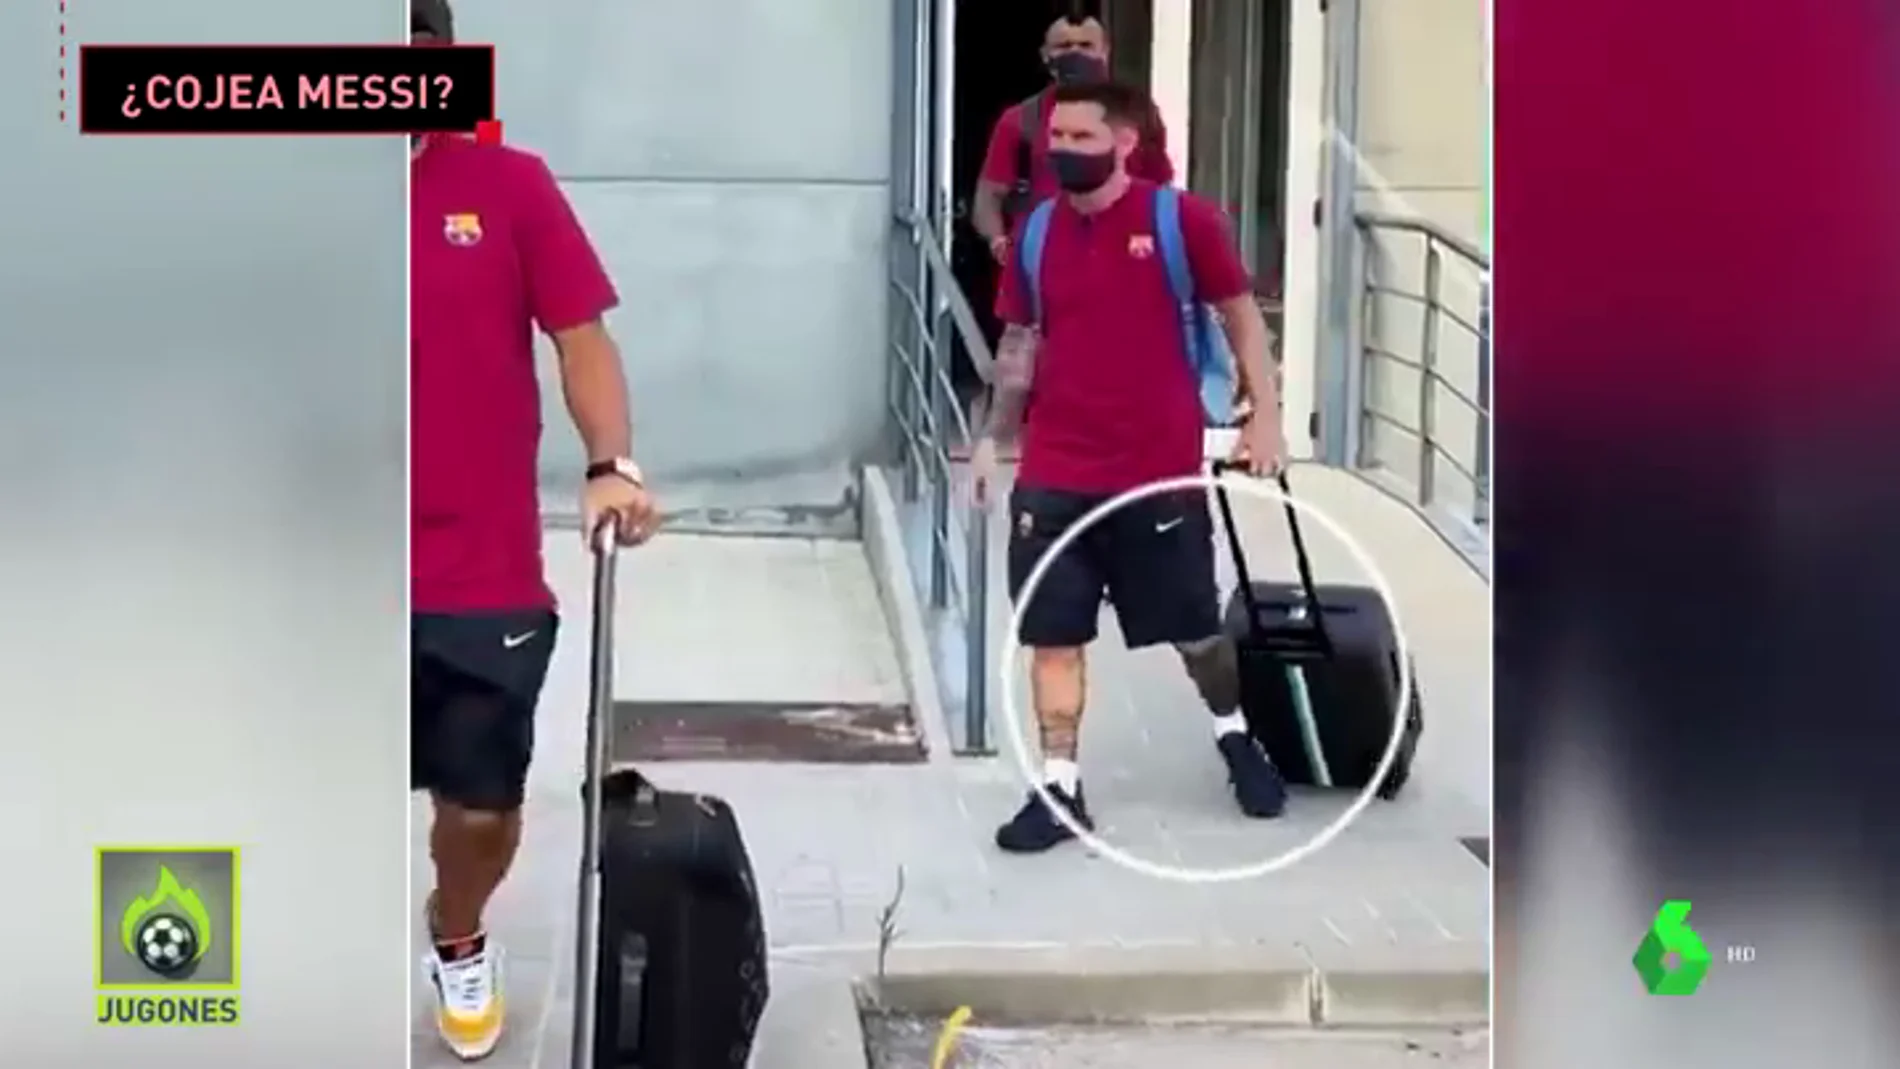 Messi cojea en su llegada a Lisboa y mantiene en vilo a los culés